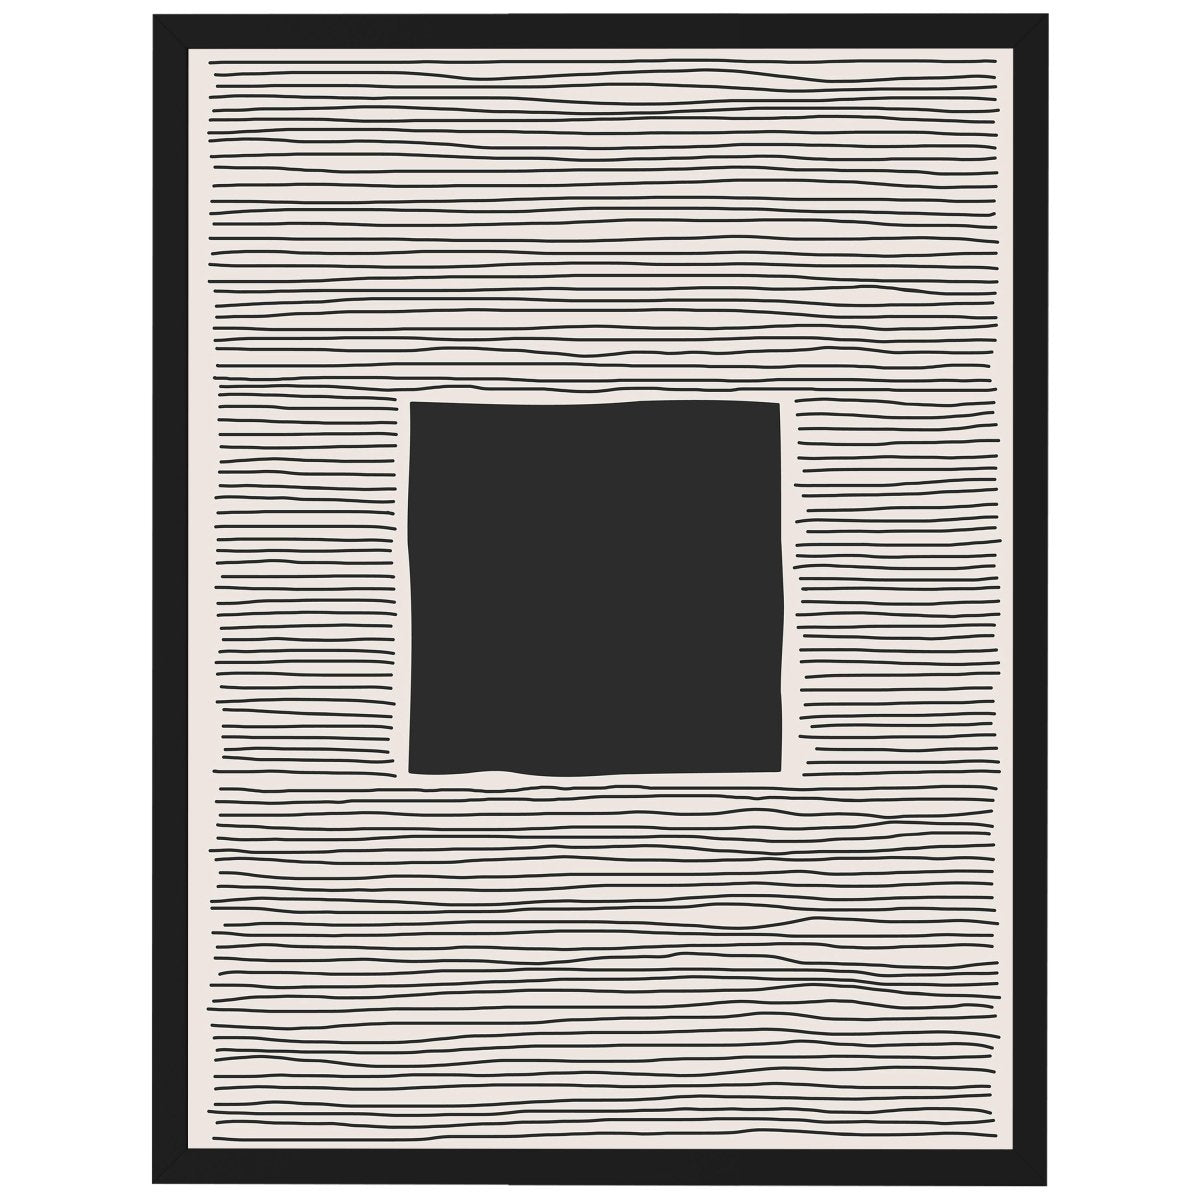 wandmotiv24 Poster, Poster - minimalistisch, schwarz, abstrakt - M0312 - Bild 1